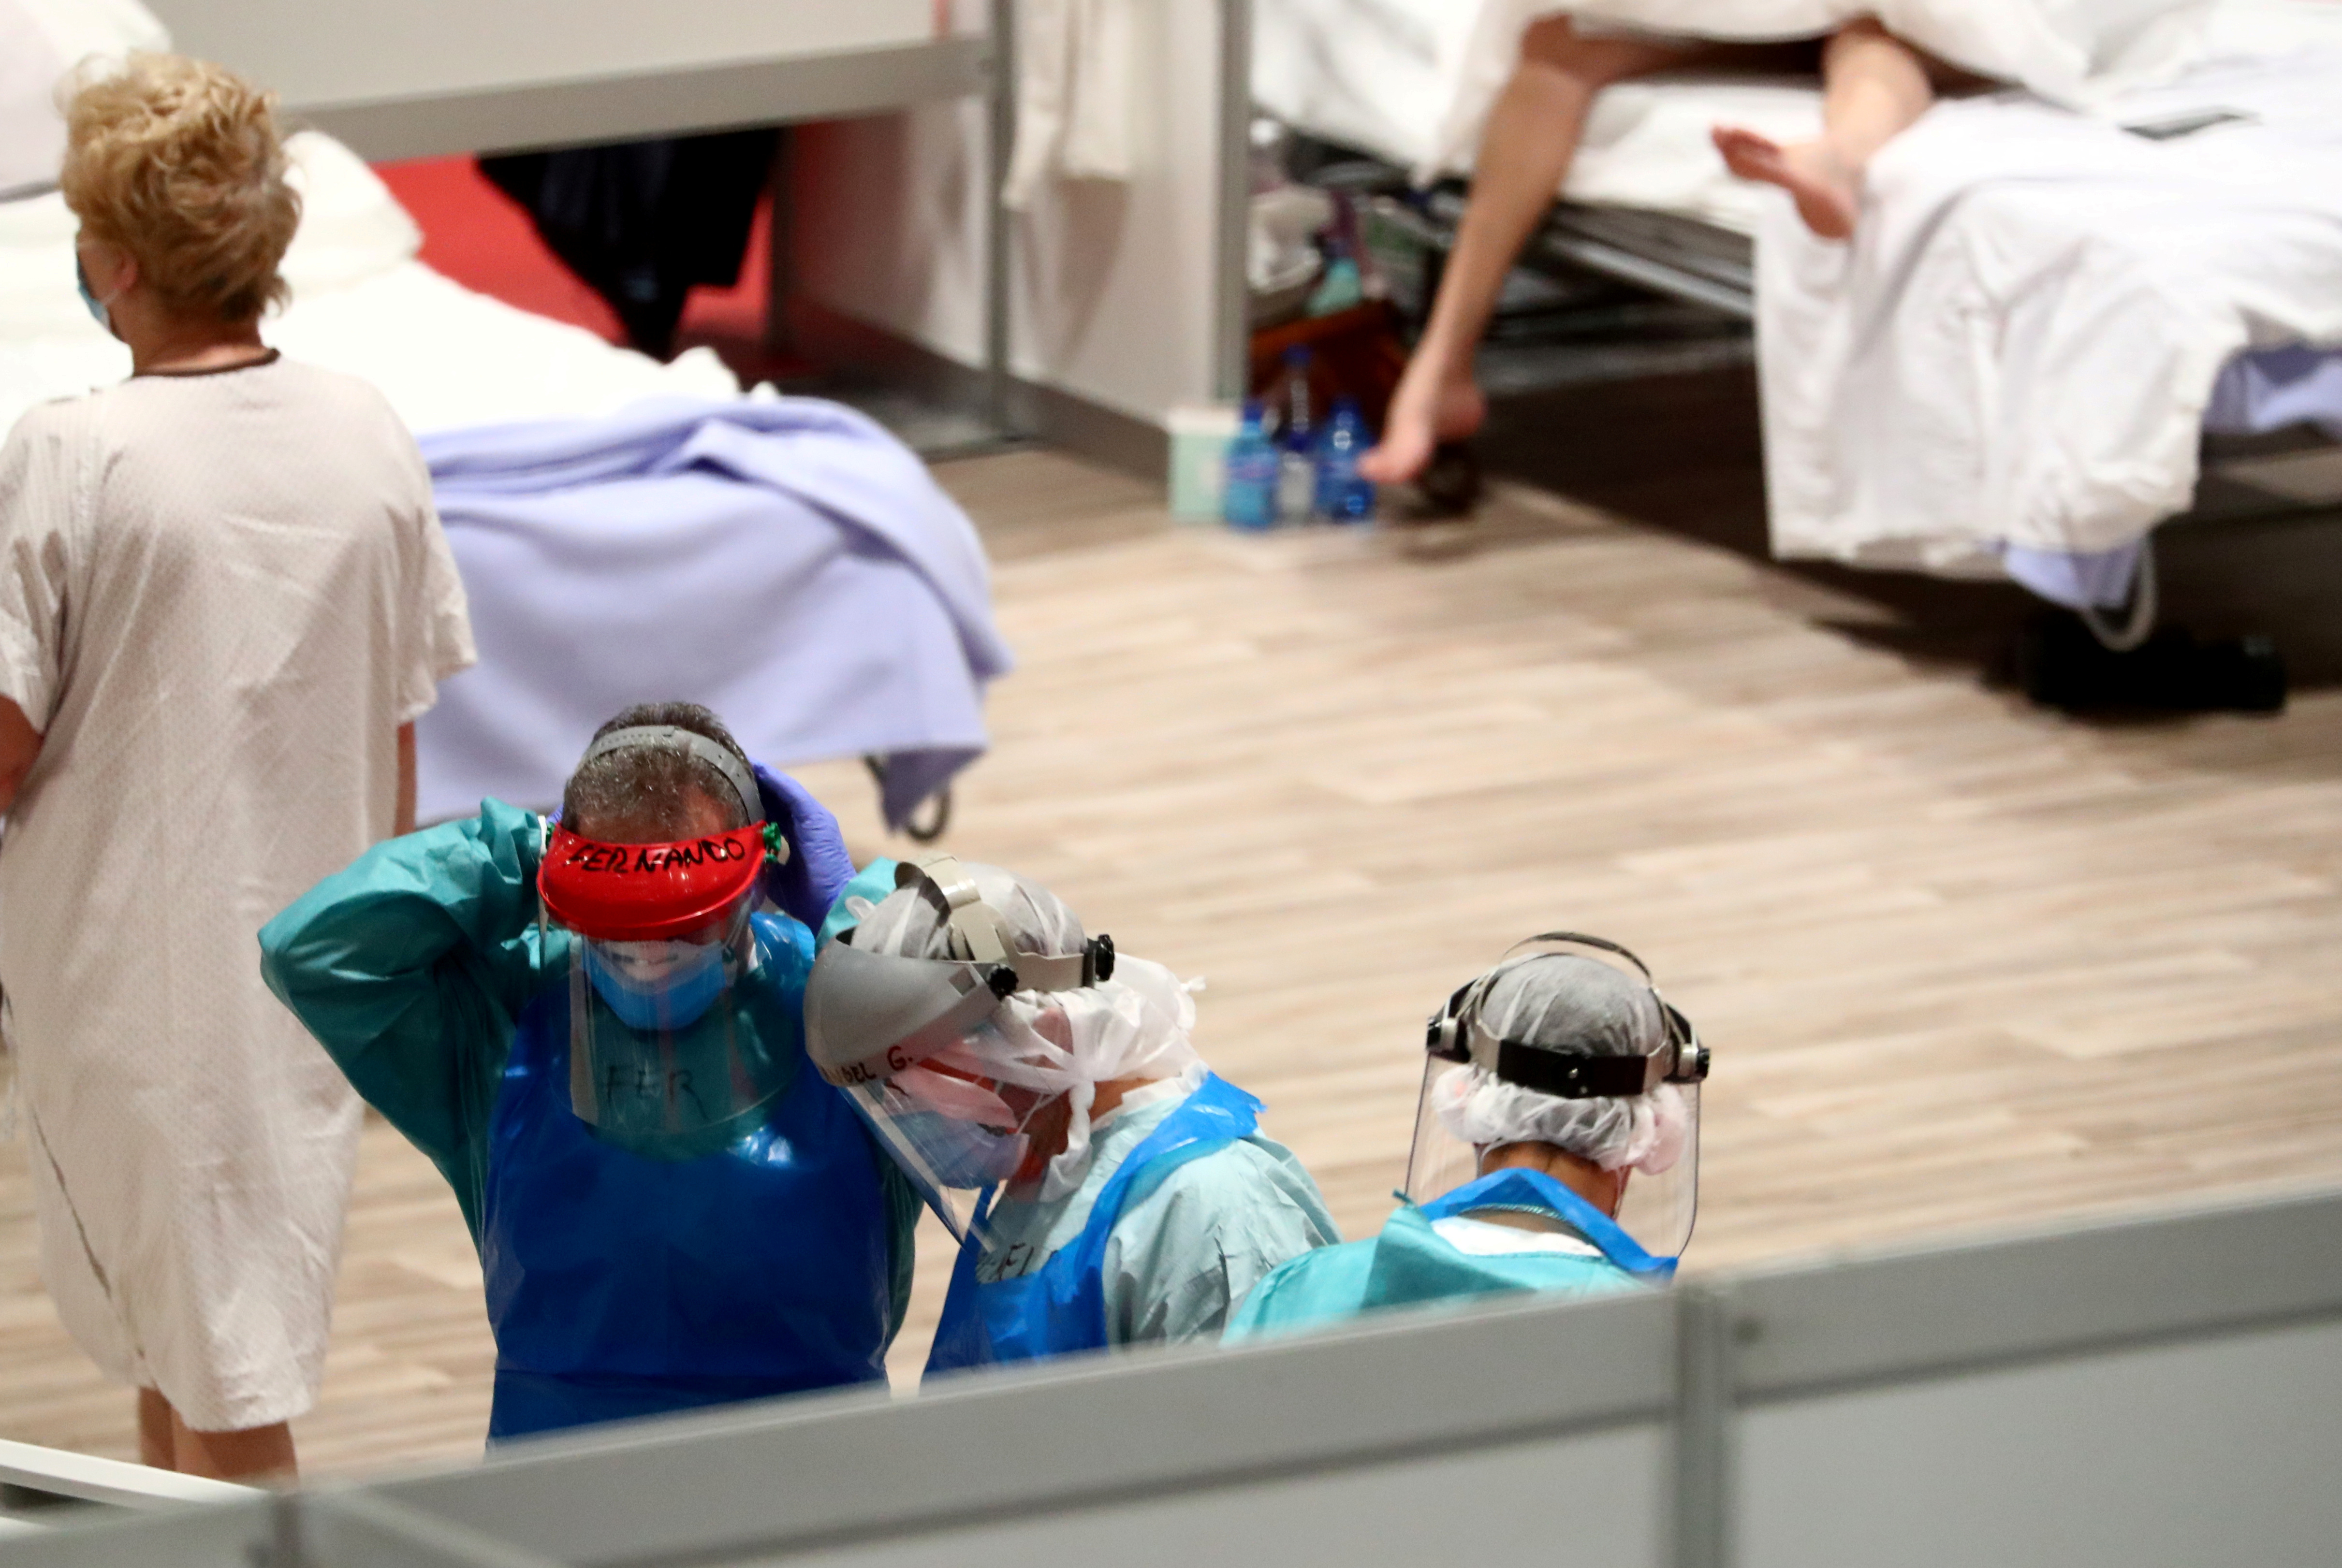 El drama de los trabajadores sanitarios de España: Cerca de 27 mil se contagiaron de coronavirus (Detalles)